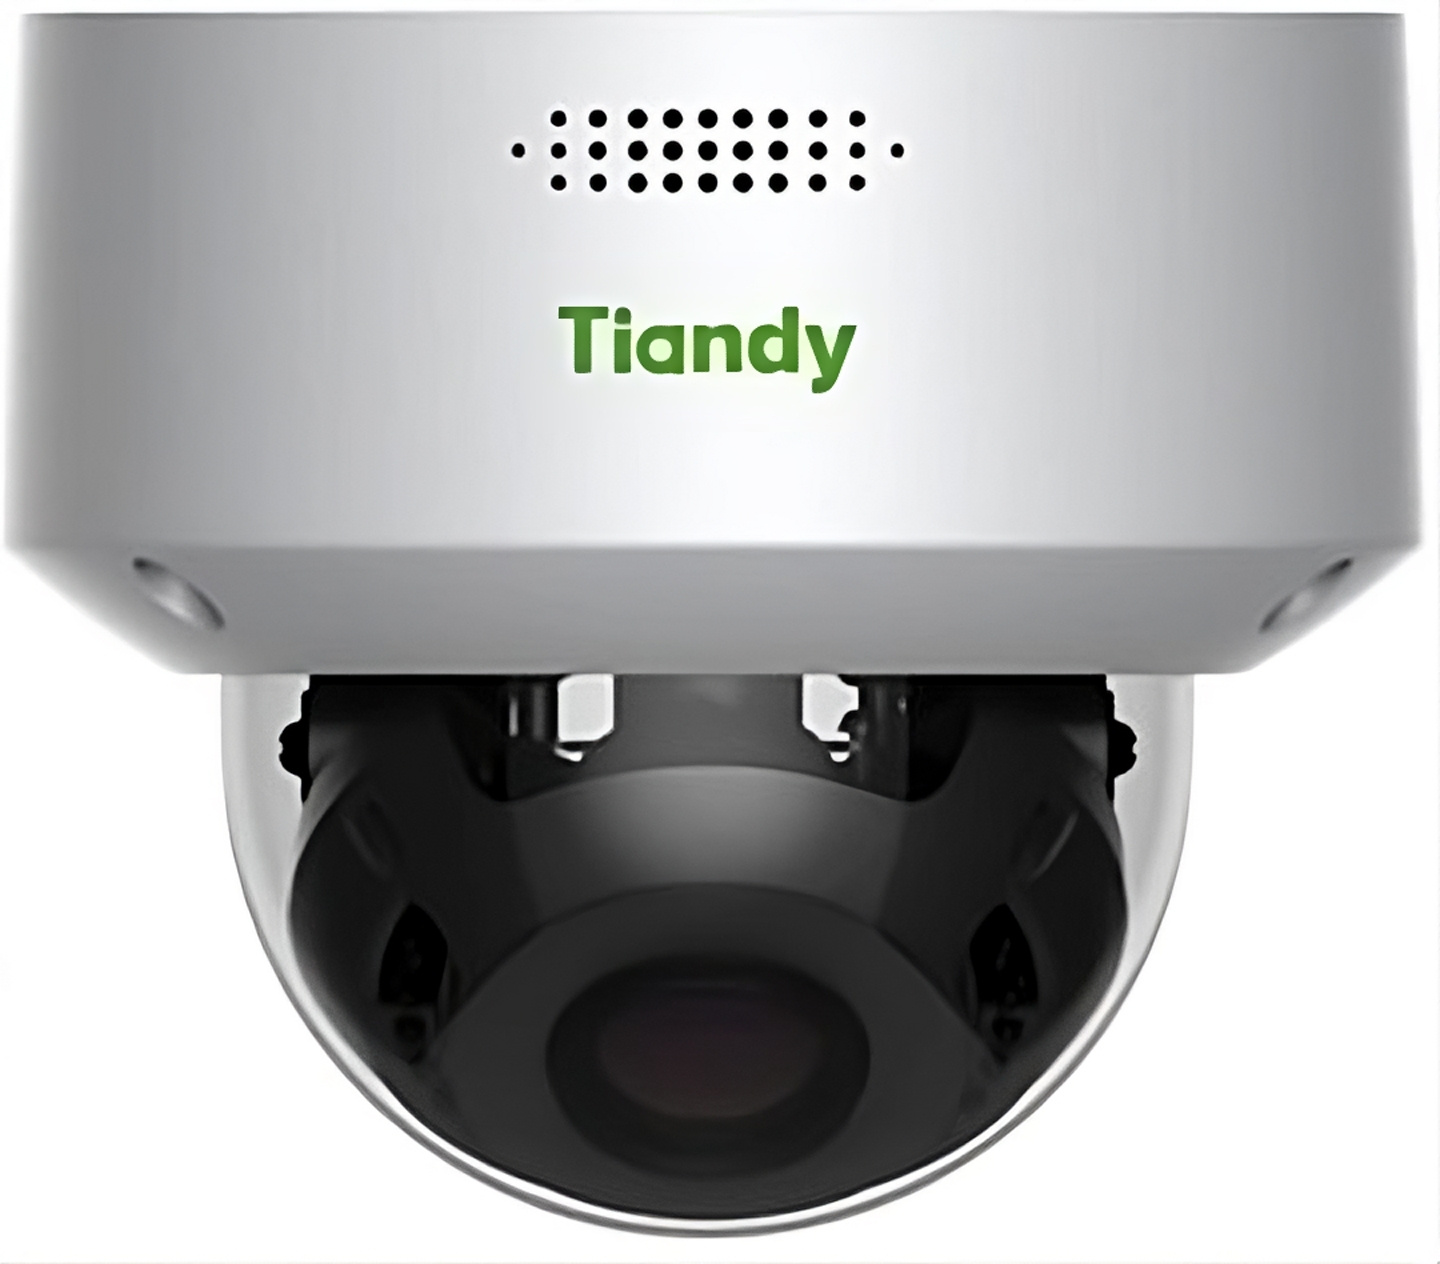 Камера видеонаблюдения Tiandy TC-C35MS 2592 x 1944 2.7-13.5мм, TC-C35MS I5/A/E/Y/M/H/V4.0